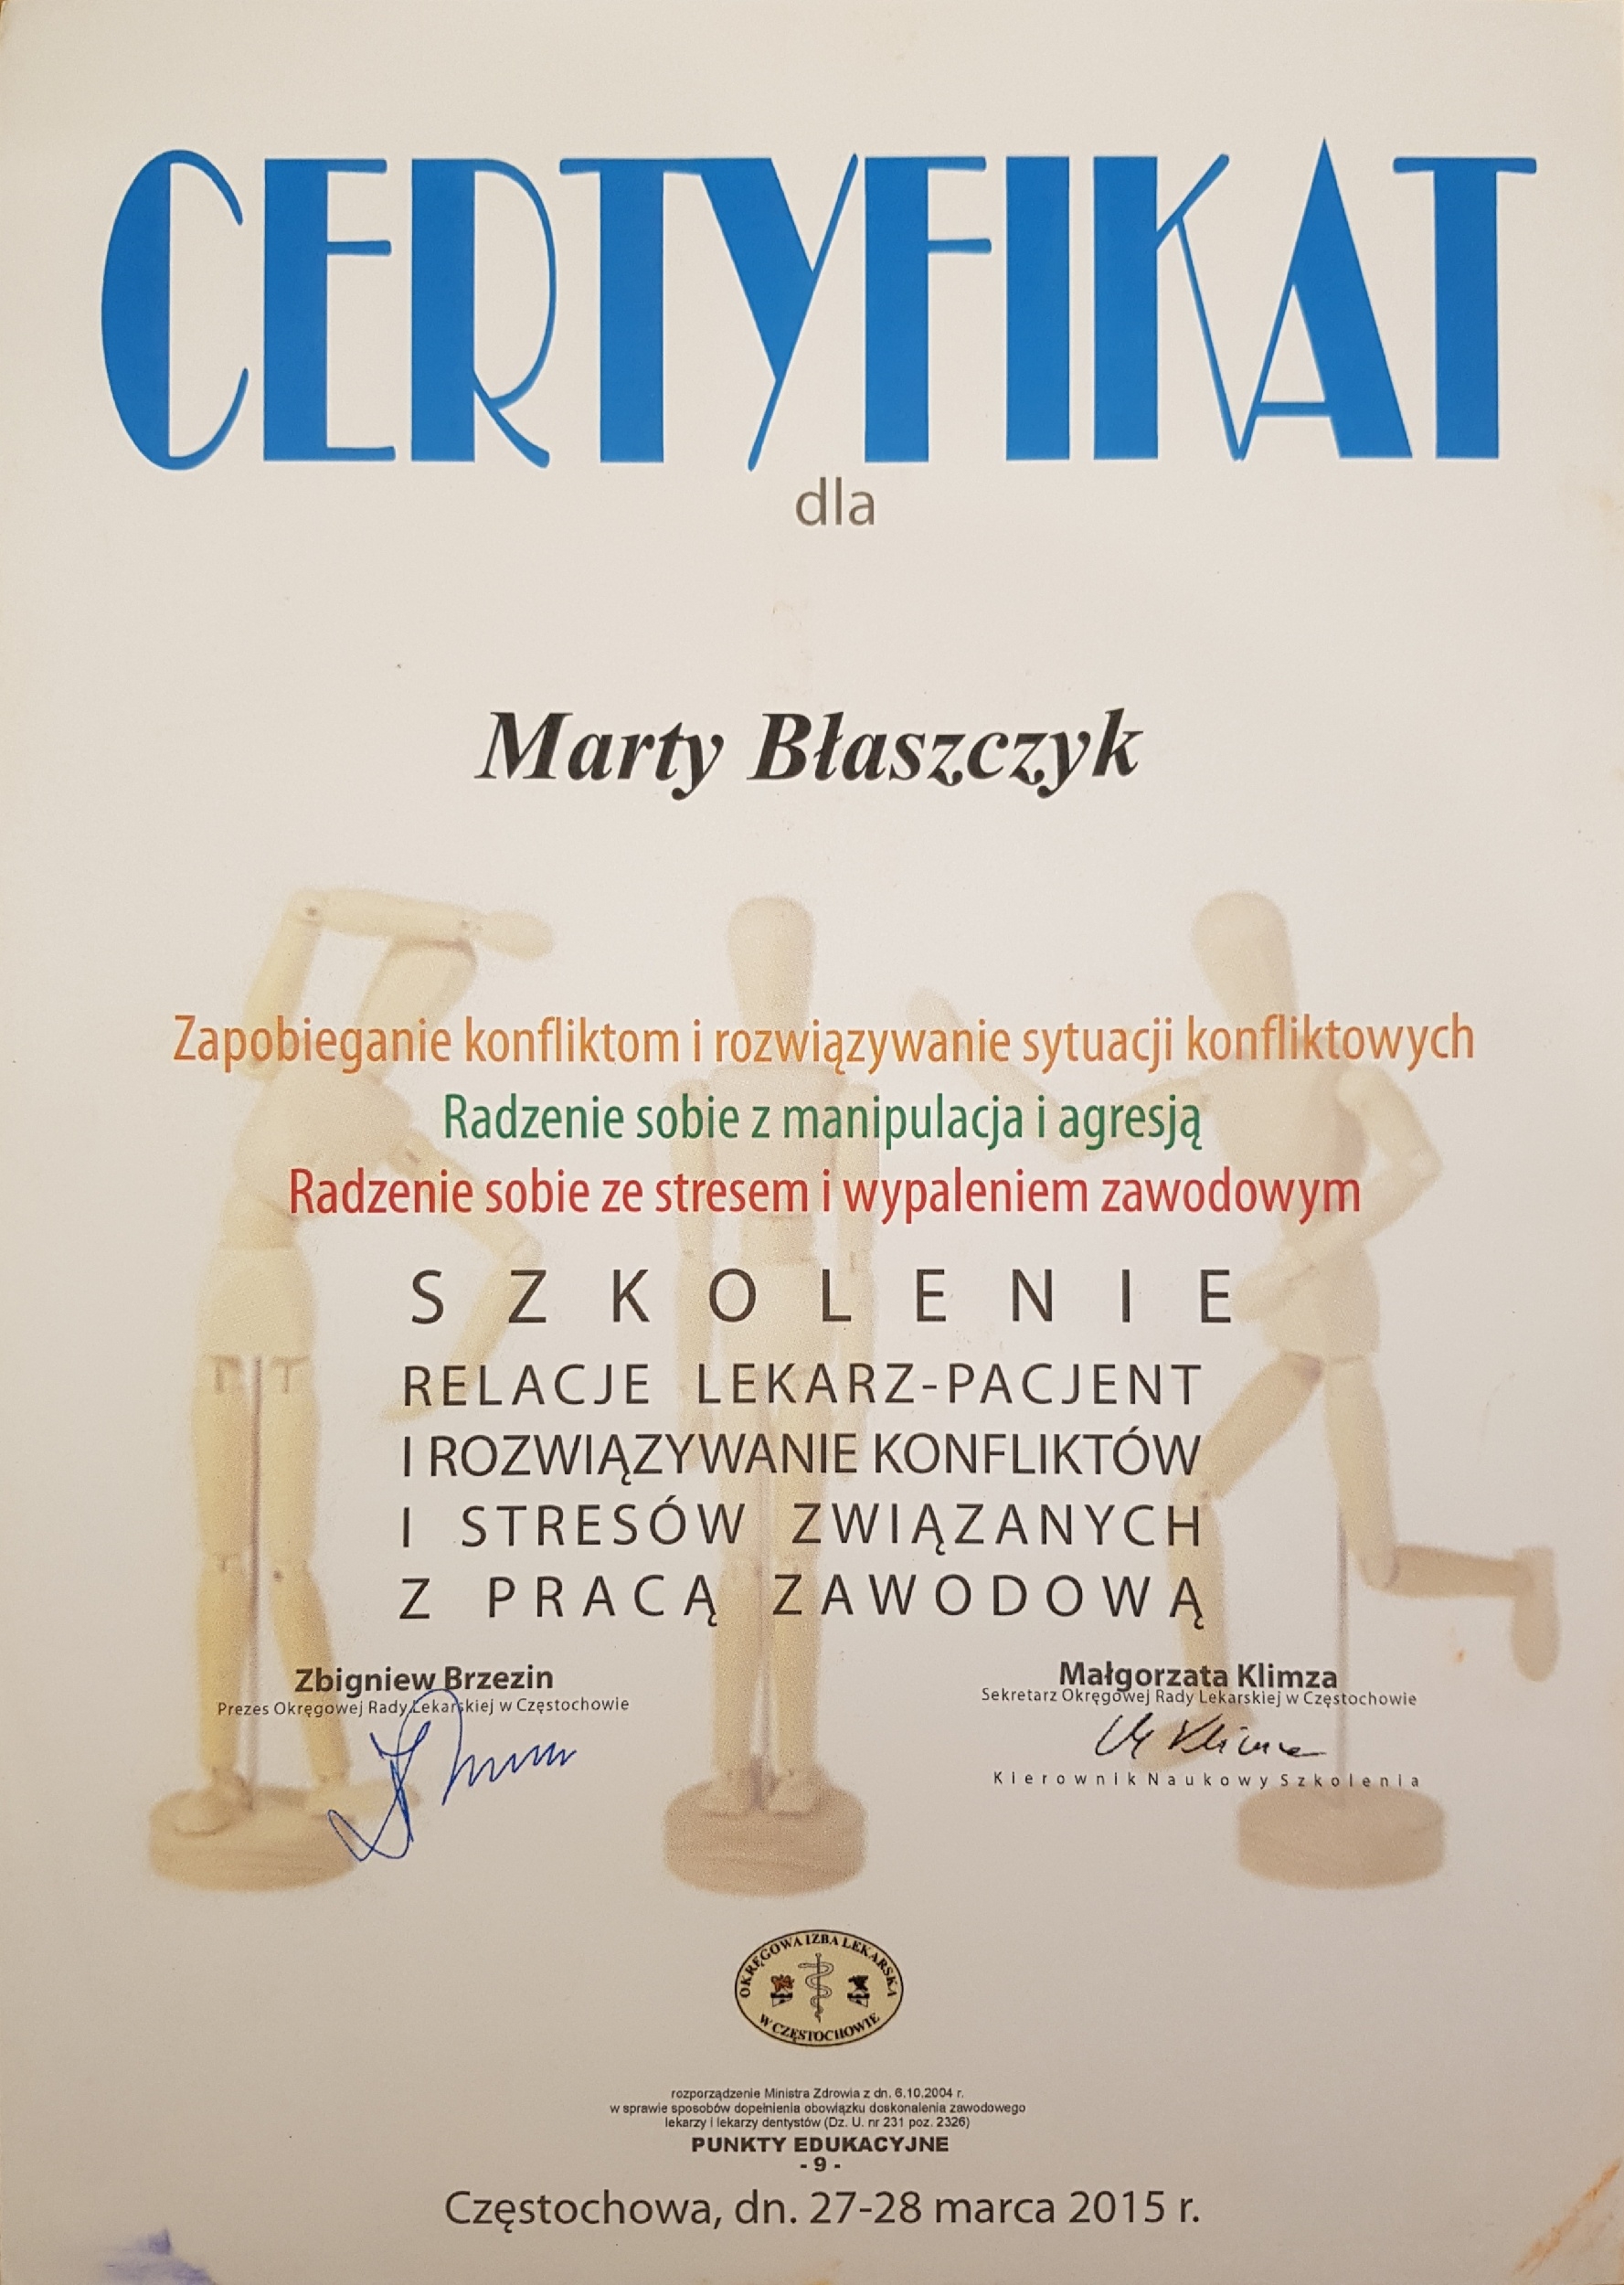 Certyfikaty Dr Marta Błaszczyk Owczarek 2019 16.50.09(1)